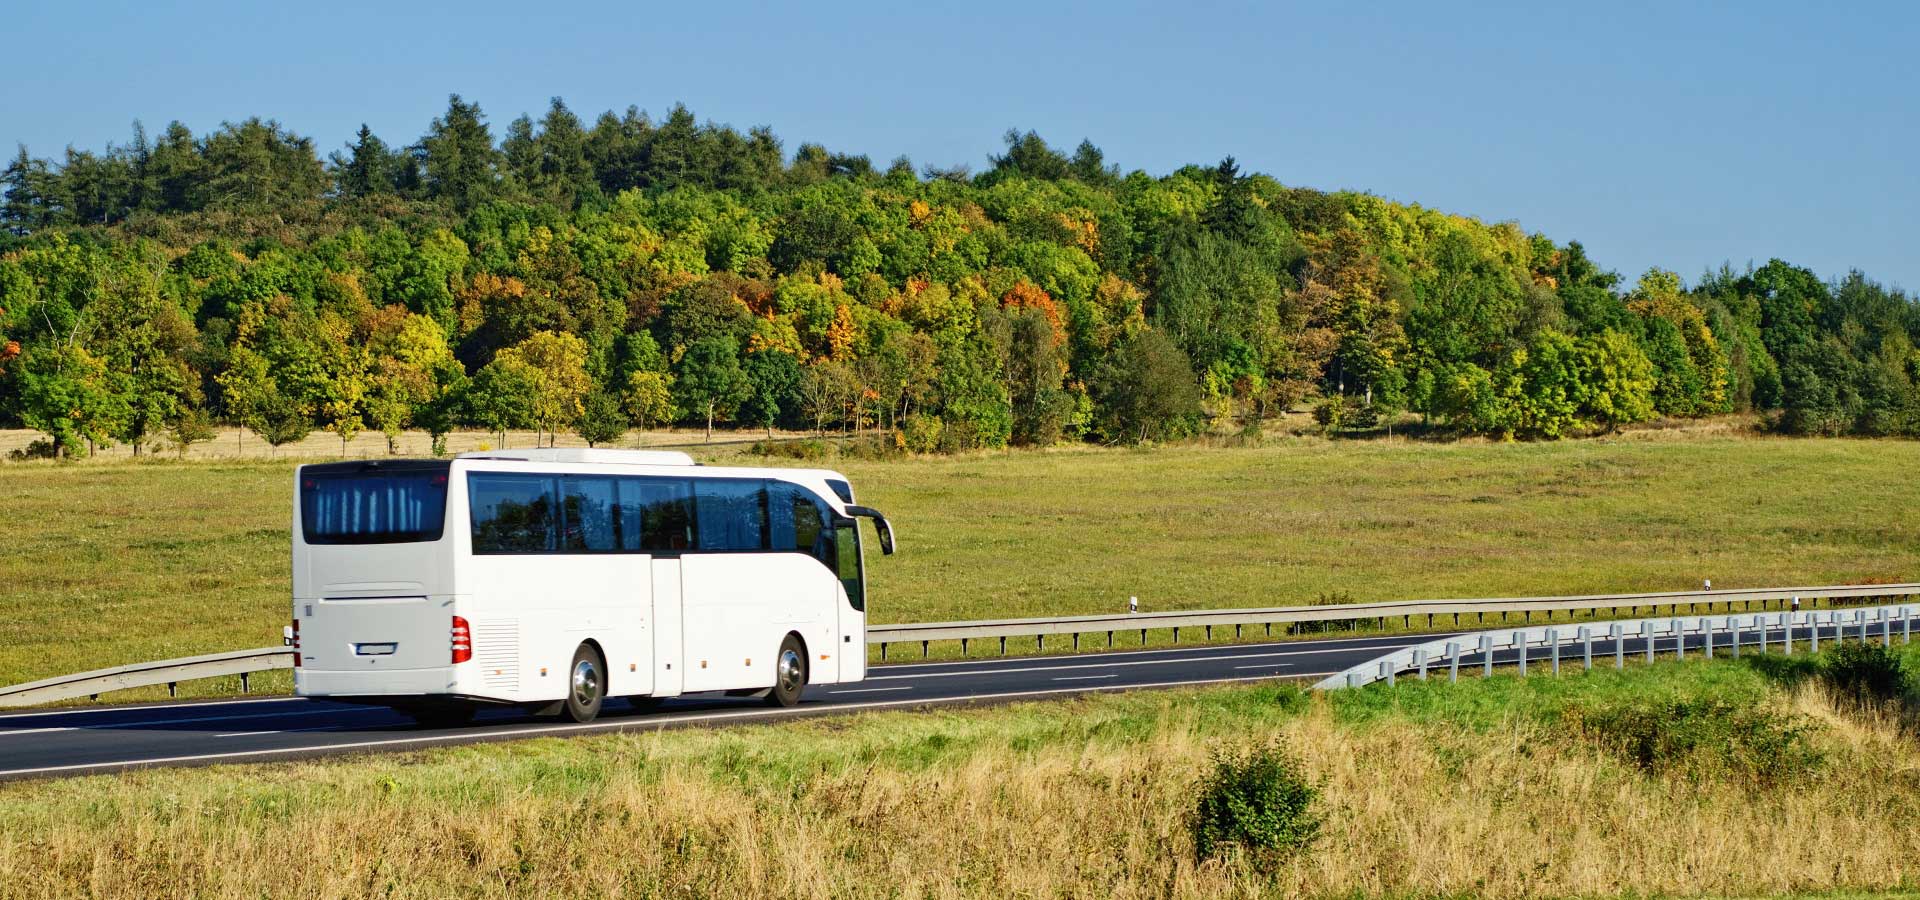 L'autocar, le bus, le minibus, c'est plus écologique !